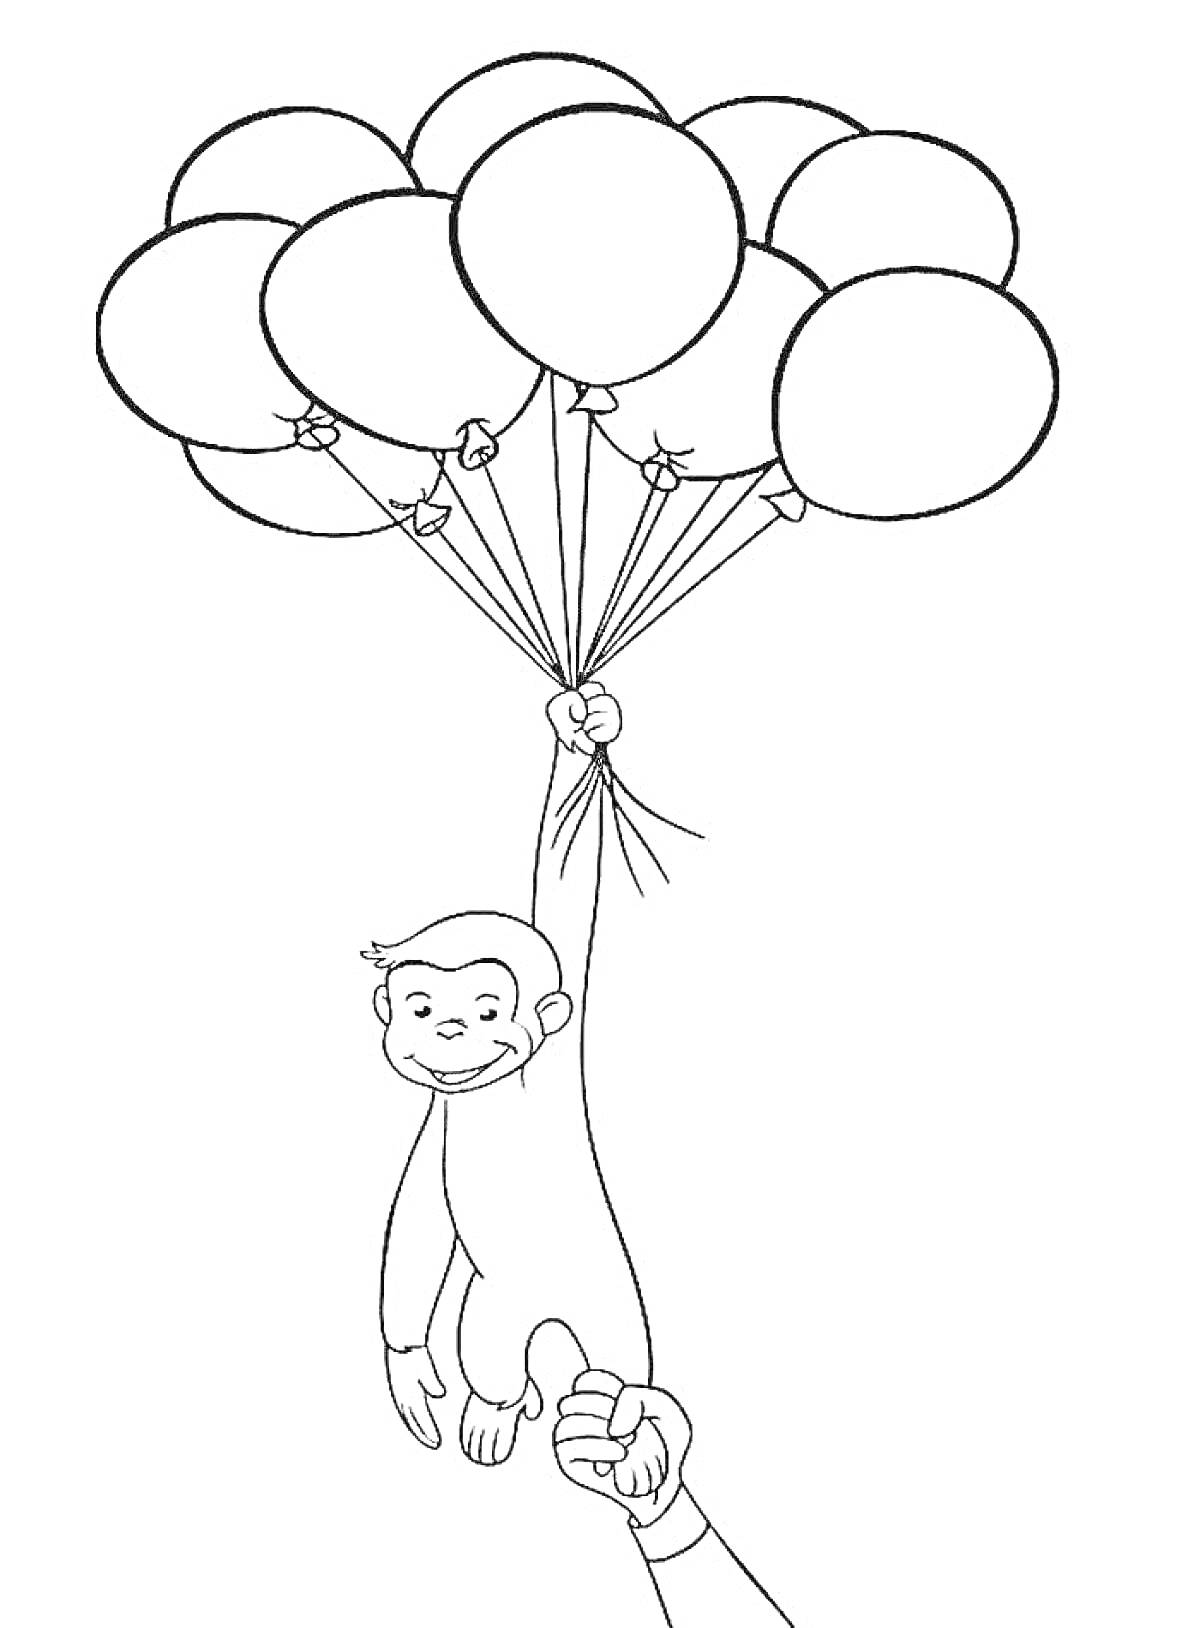 Обезьянка держится за воздушные шары